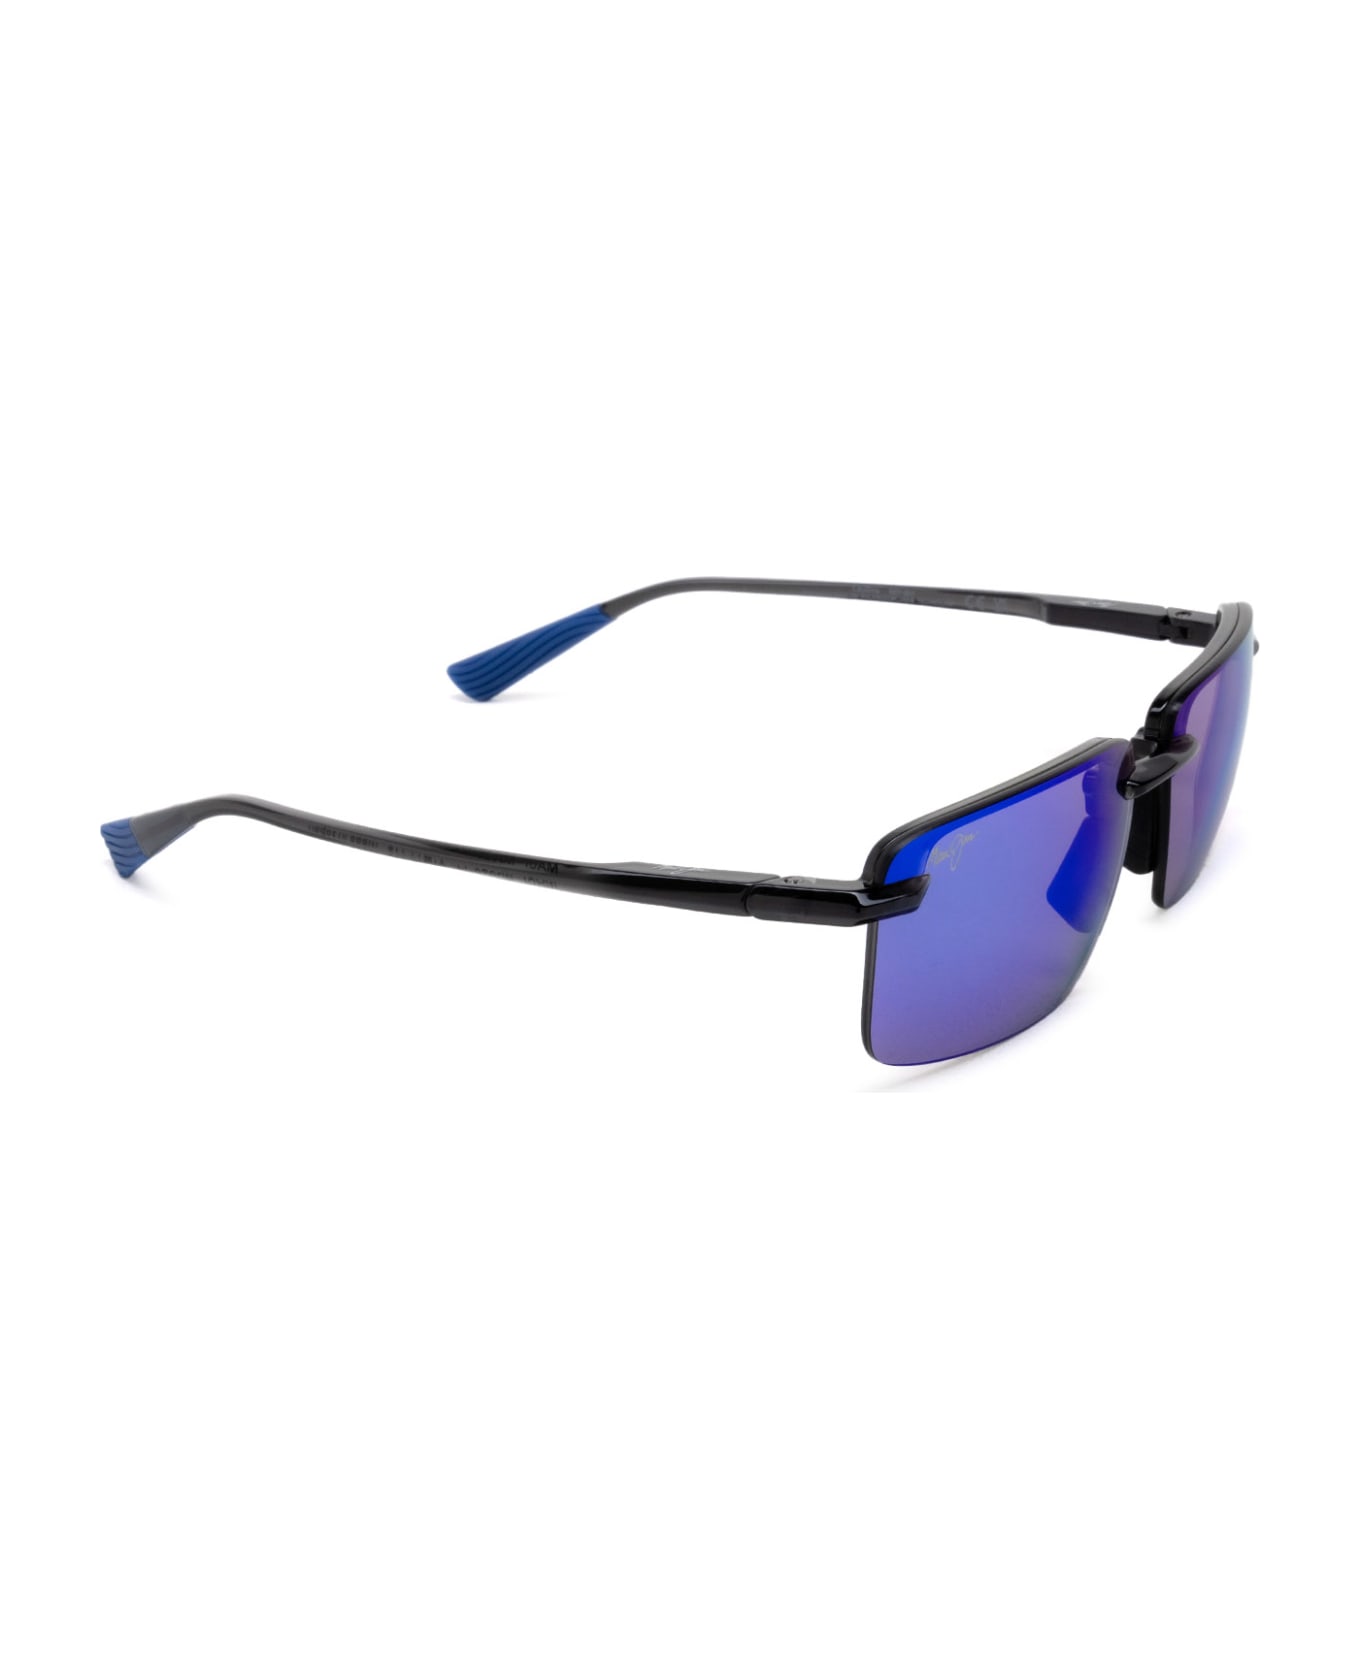 Maui Jim Mj626 Shiny Transparent Dark Grey Sunglasses - Shiny Transparent Dark Grey サングラス